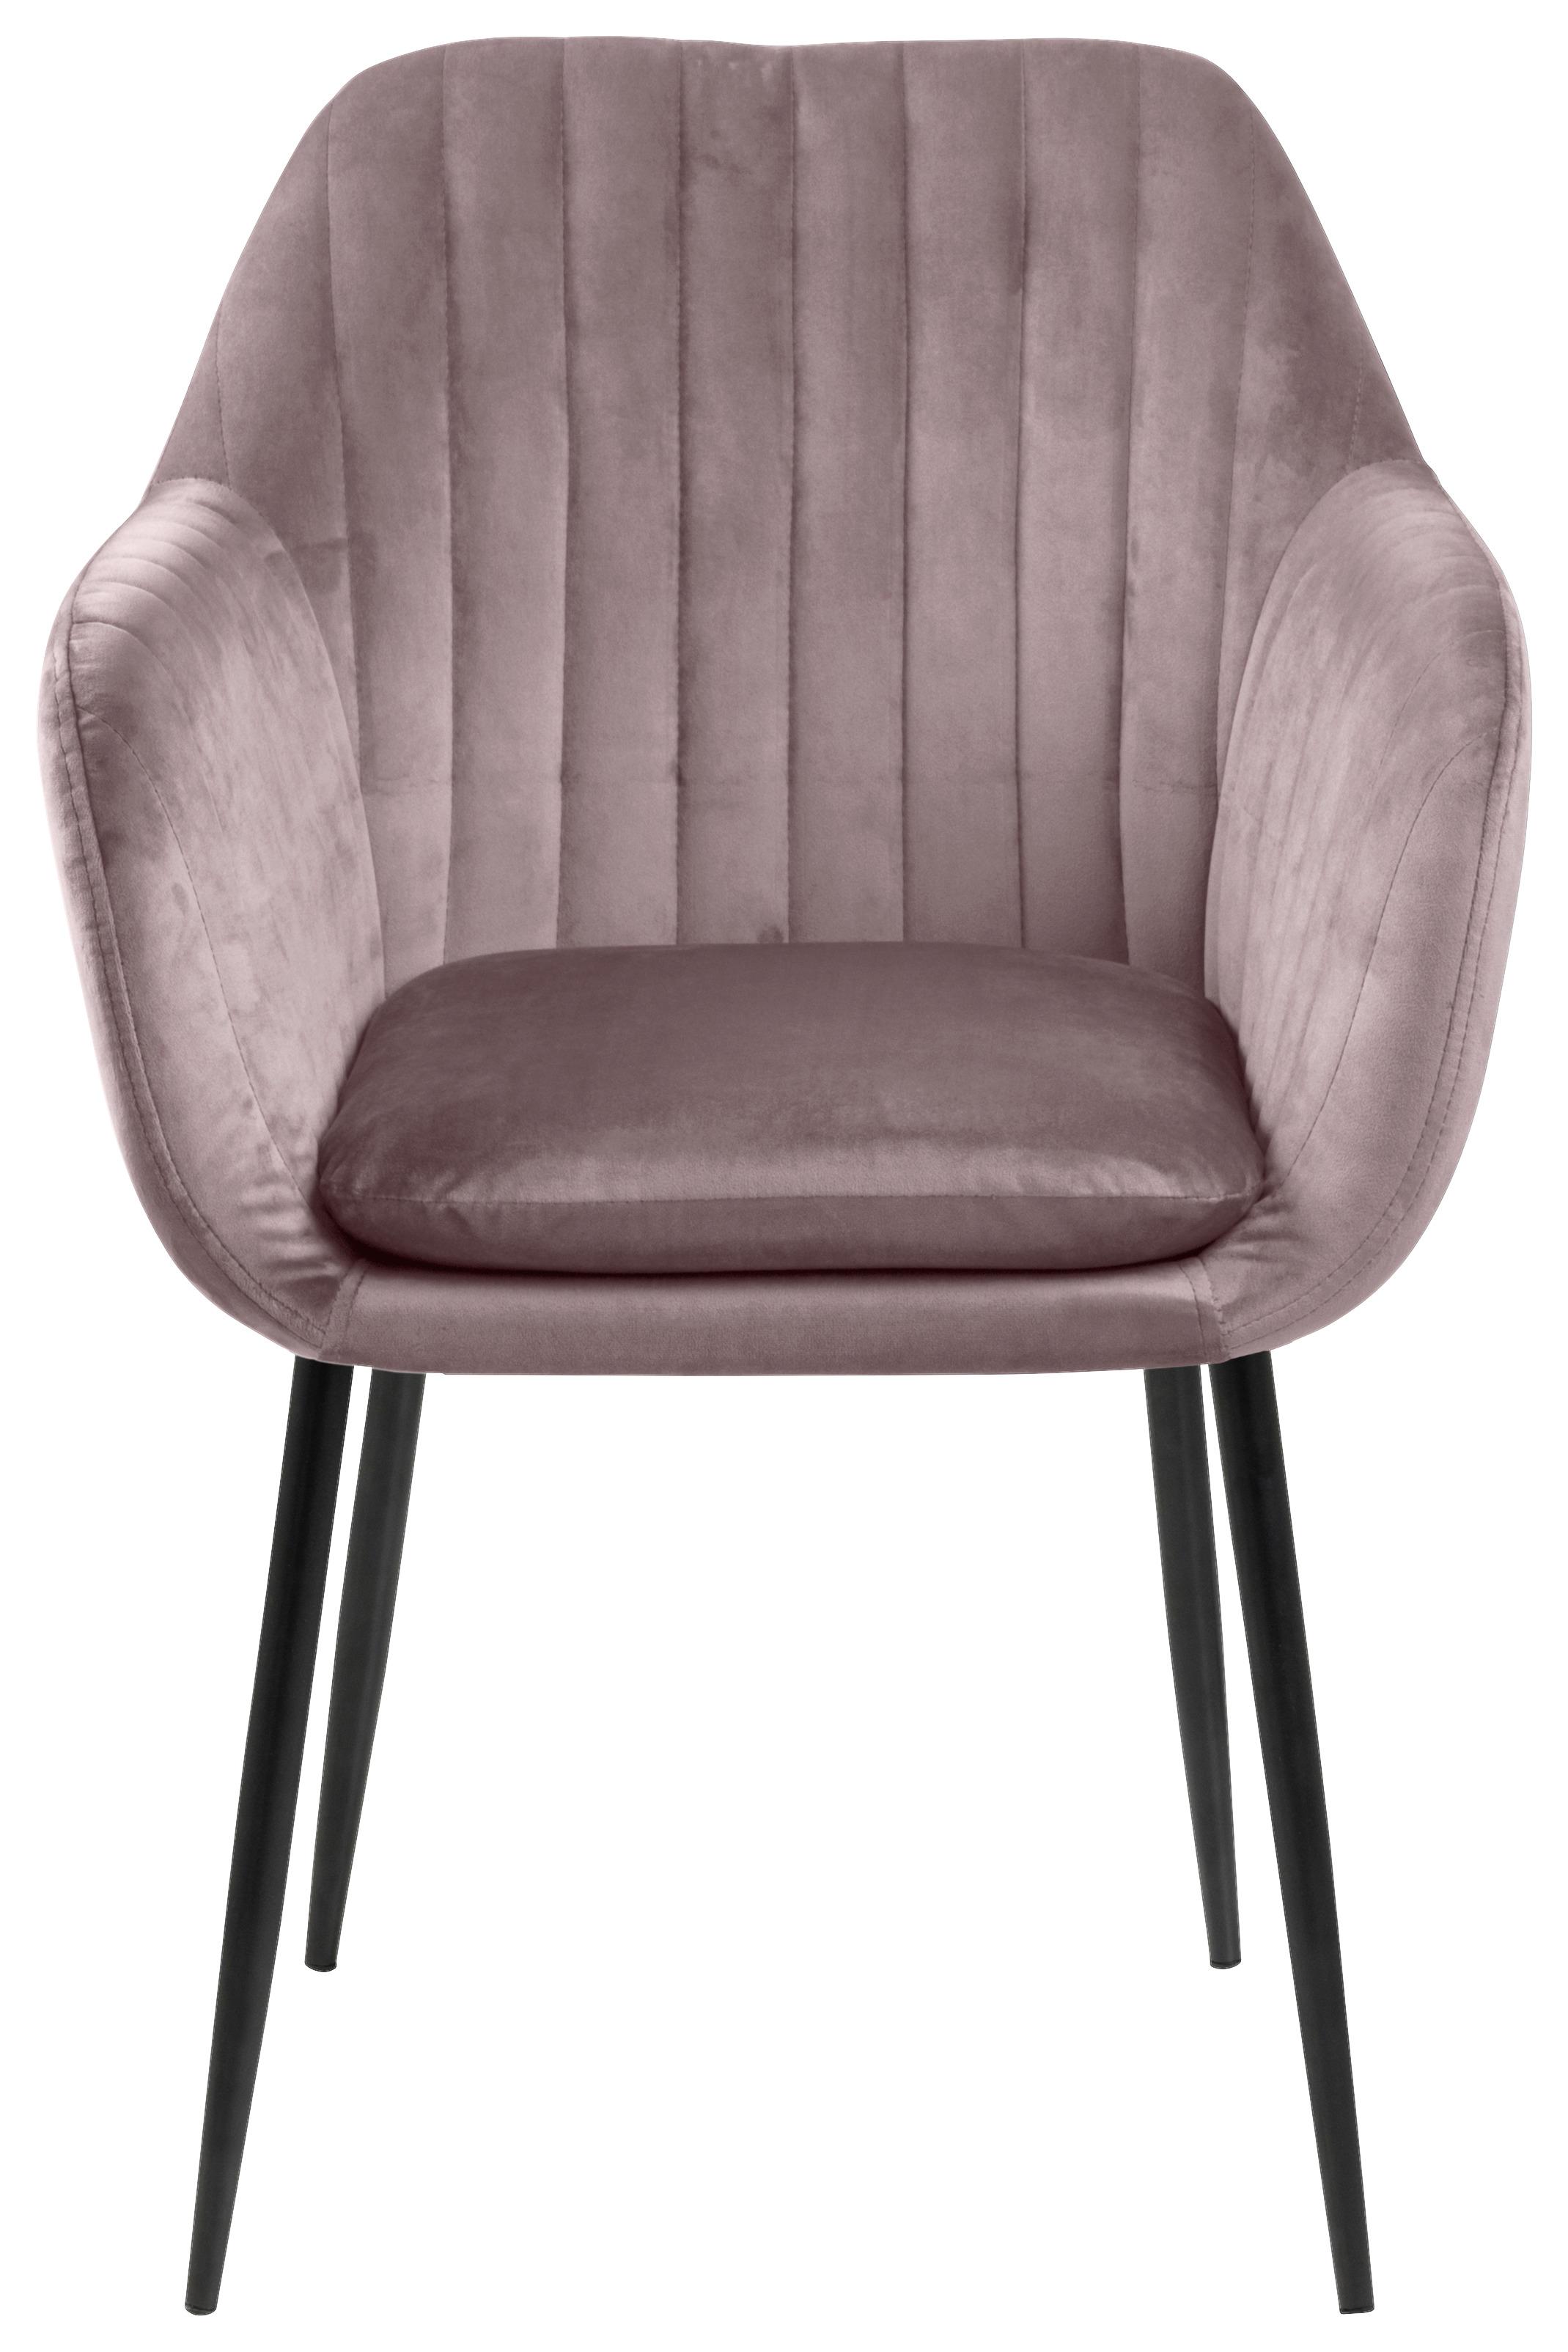 Židle S Područkami Emilia Růžová - starorůžová/černá, Trend, kov/textil (57/83/59cm) - Ambia Home